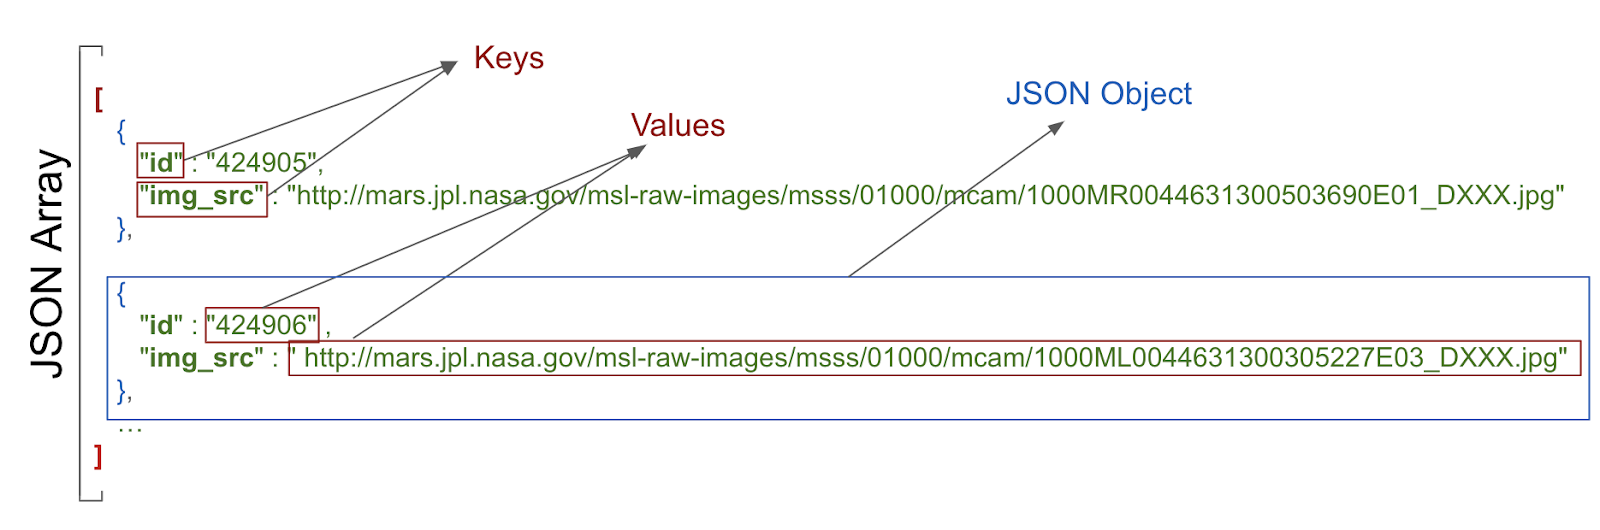 menampilkan nilai kunci dan objek JSON